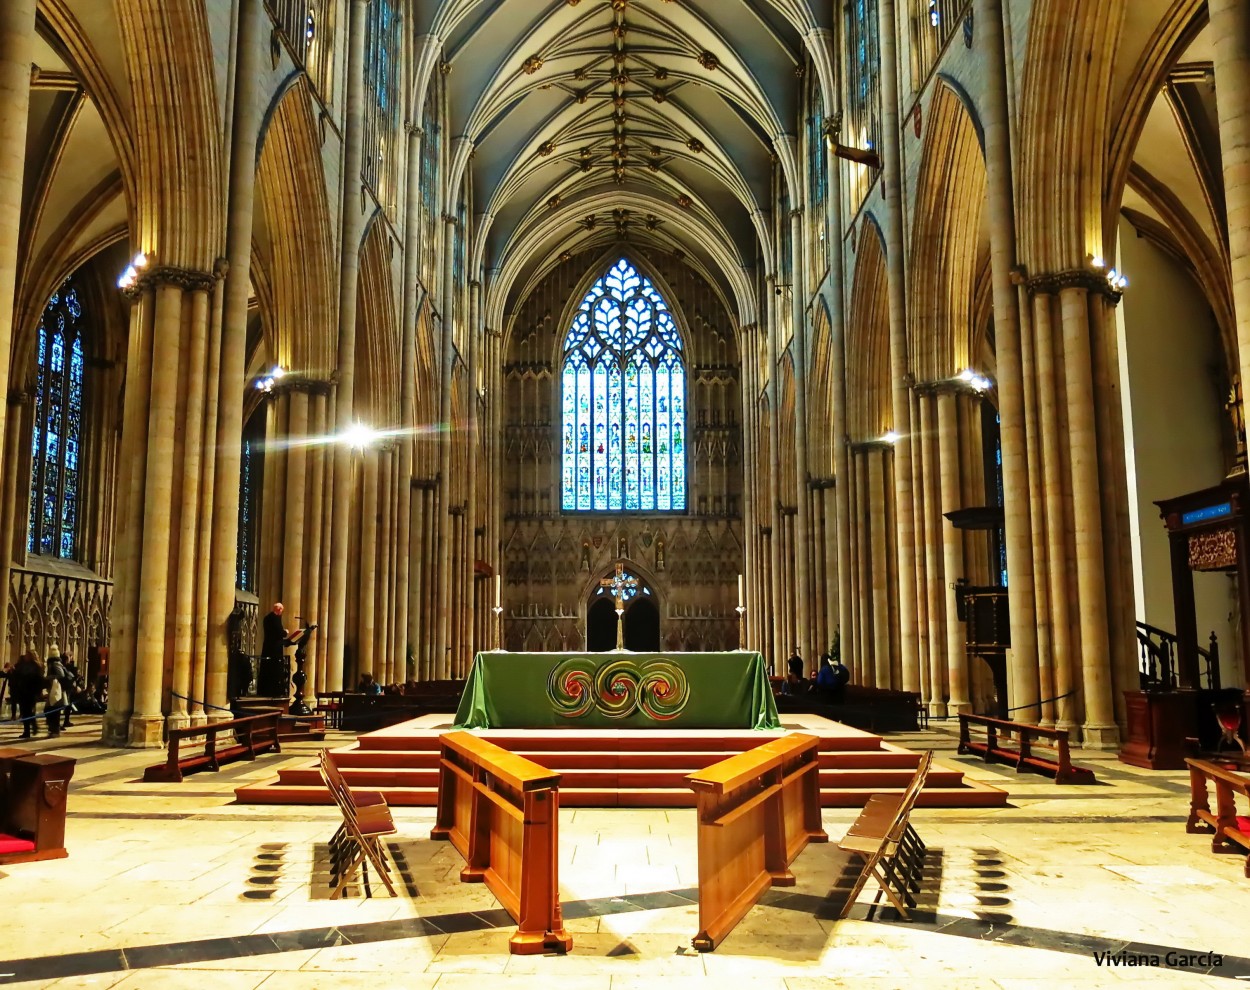 "Catedral de York, Inglaterra, Reino Unido" de Viviana Garca